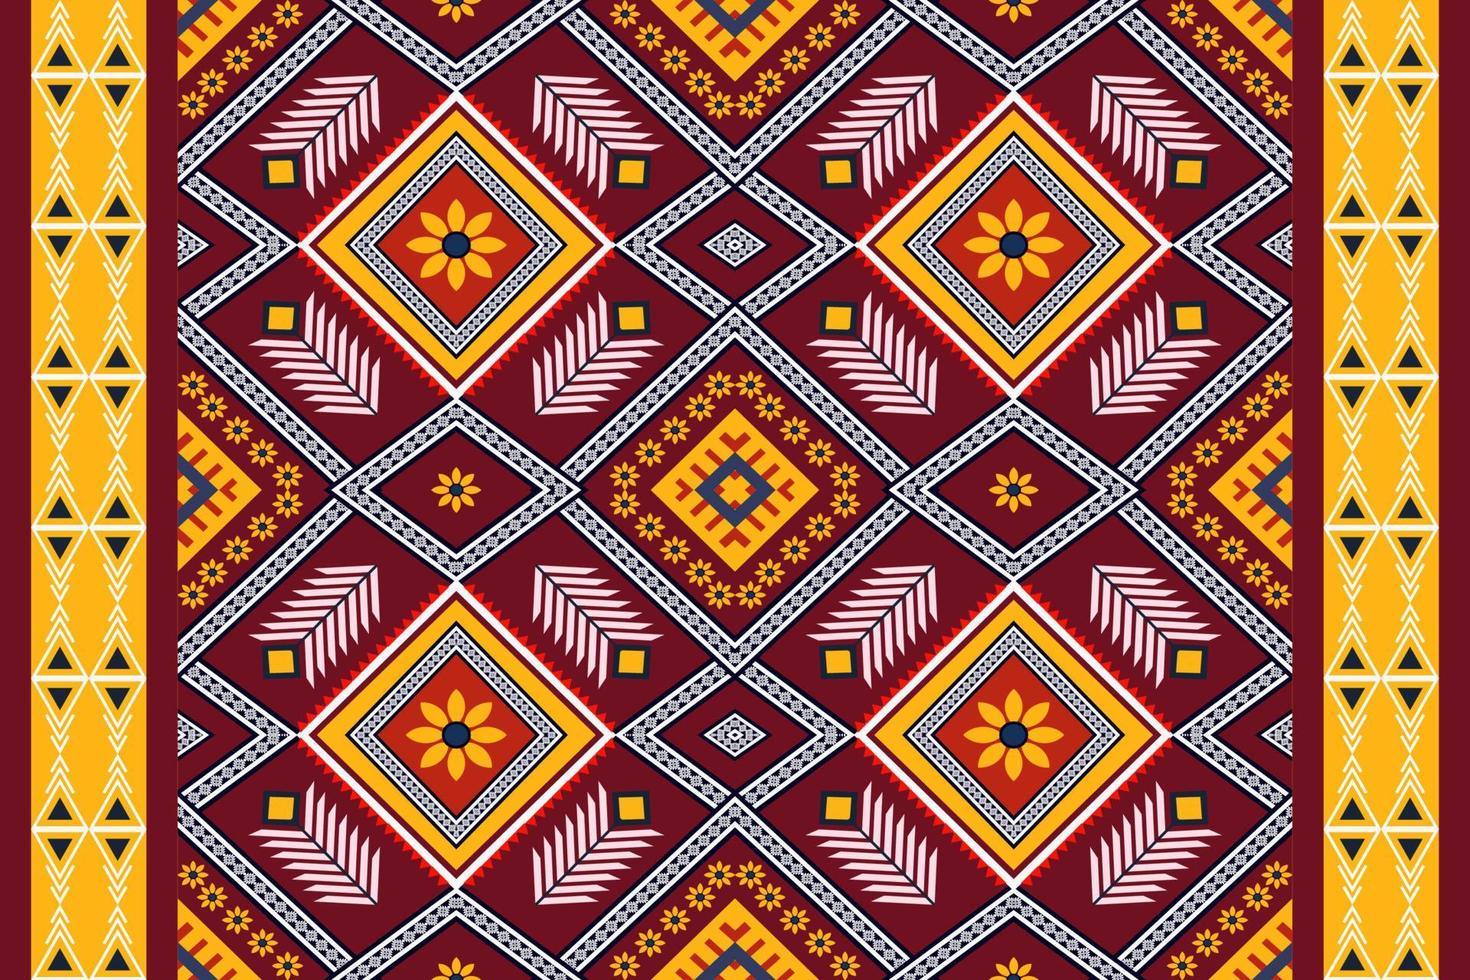 vector de patrones sin fisuras geométricos étnicos. patrón de motivo azteca árabe africano americano. elementos vectoriales diseñados para fondo, papel tapiz, impresión, envoltura, mosaico, patrón de tela. patrón de vectores